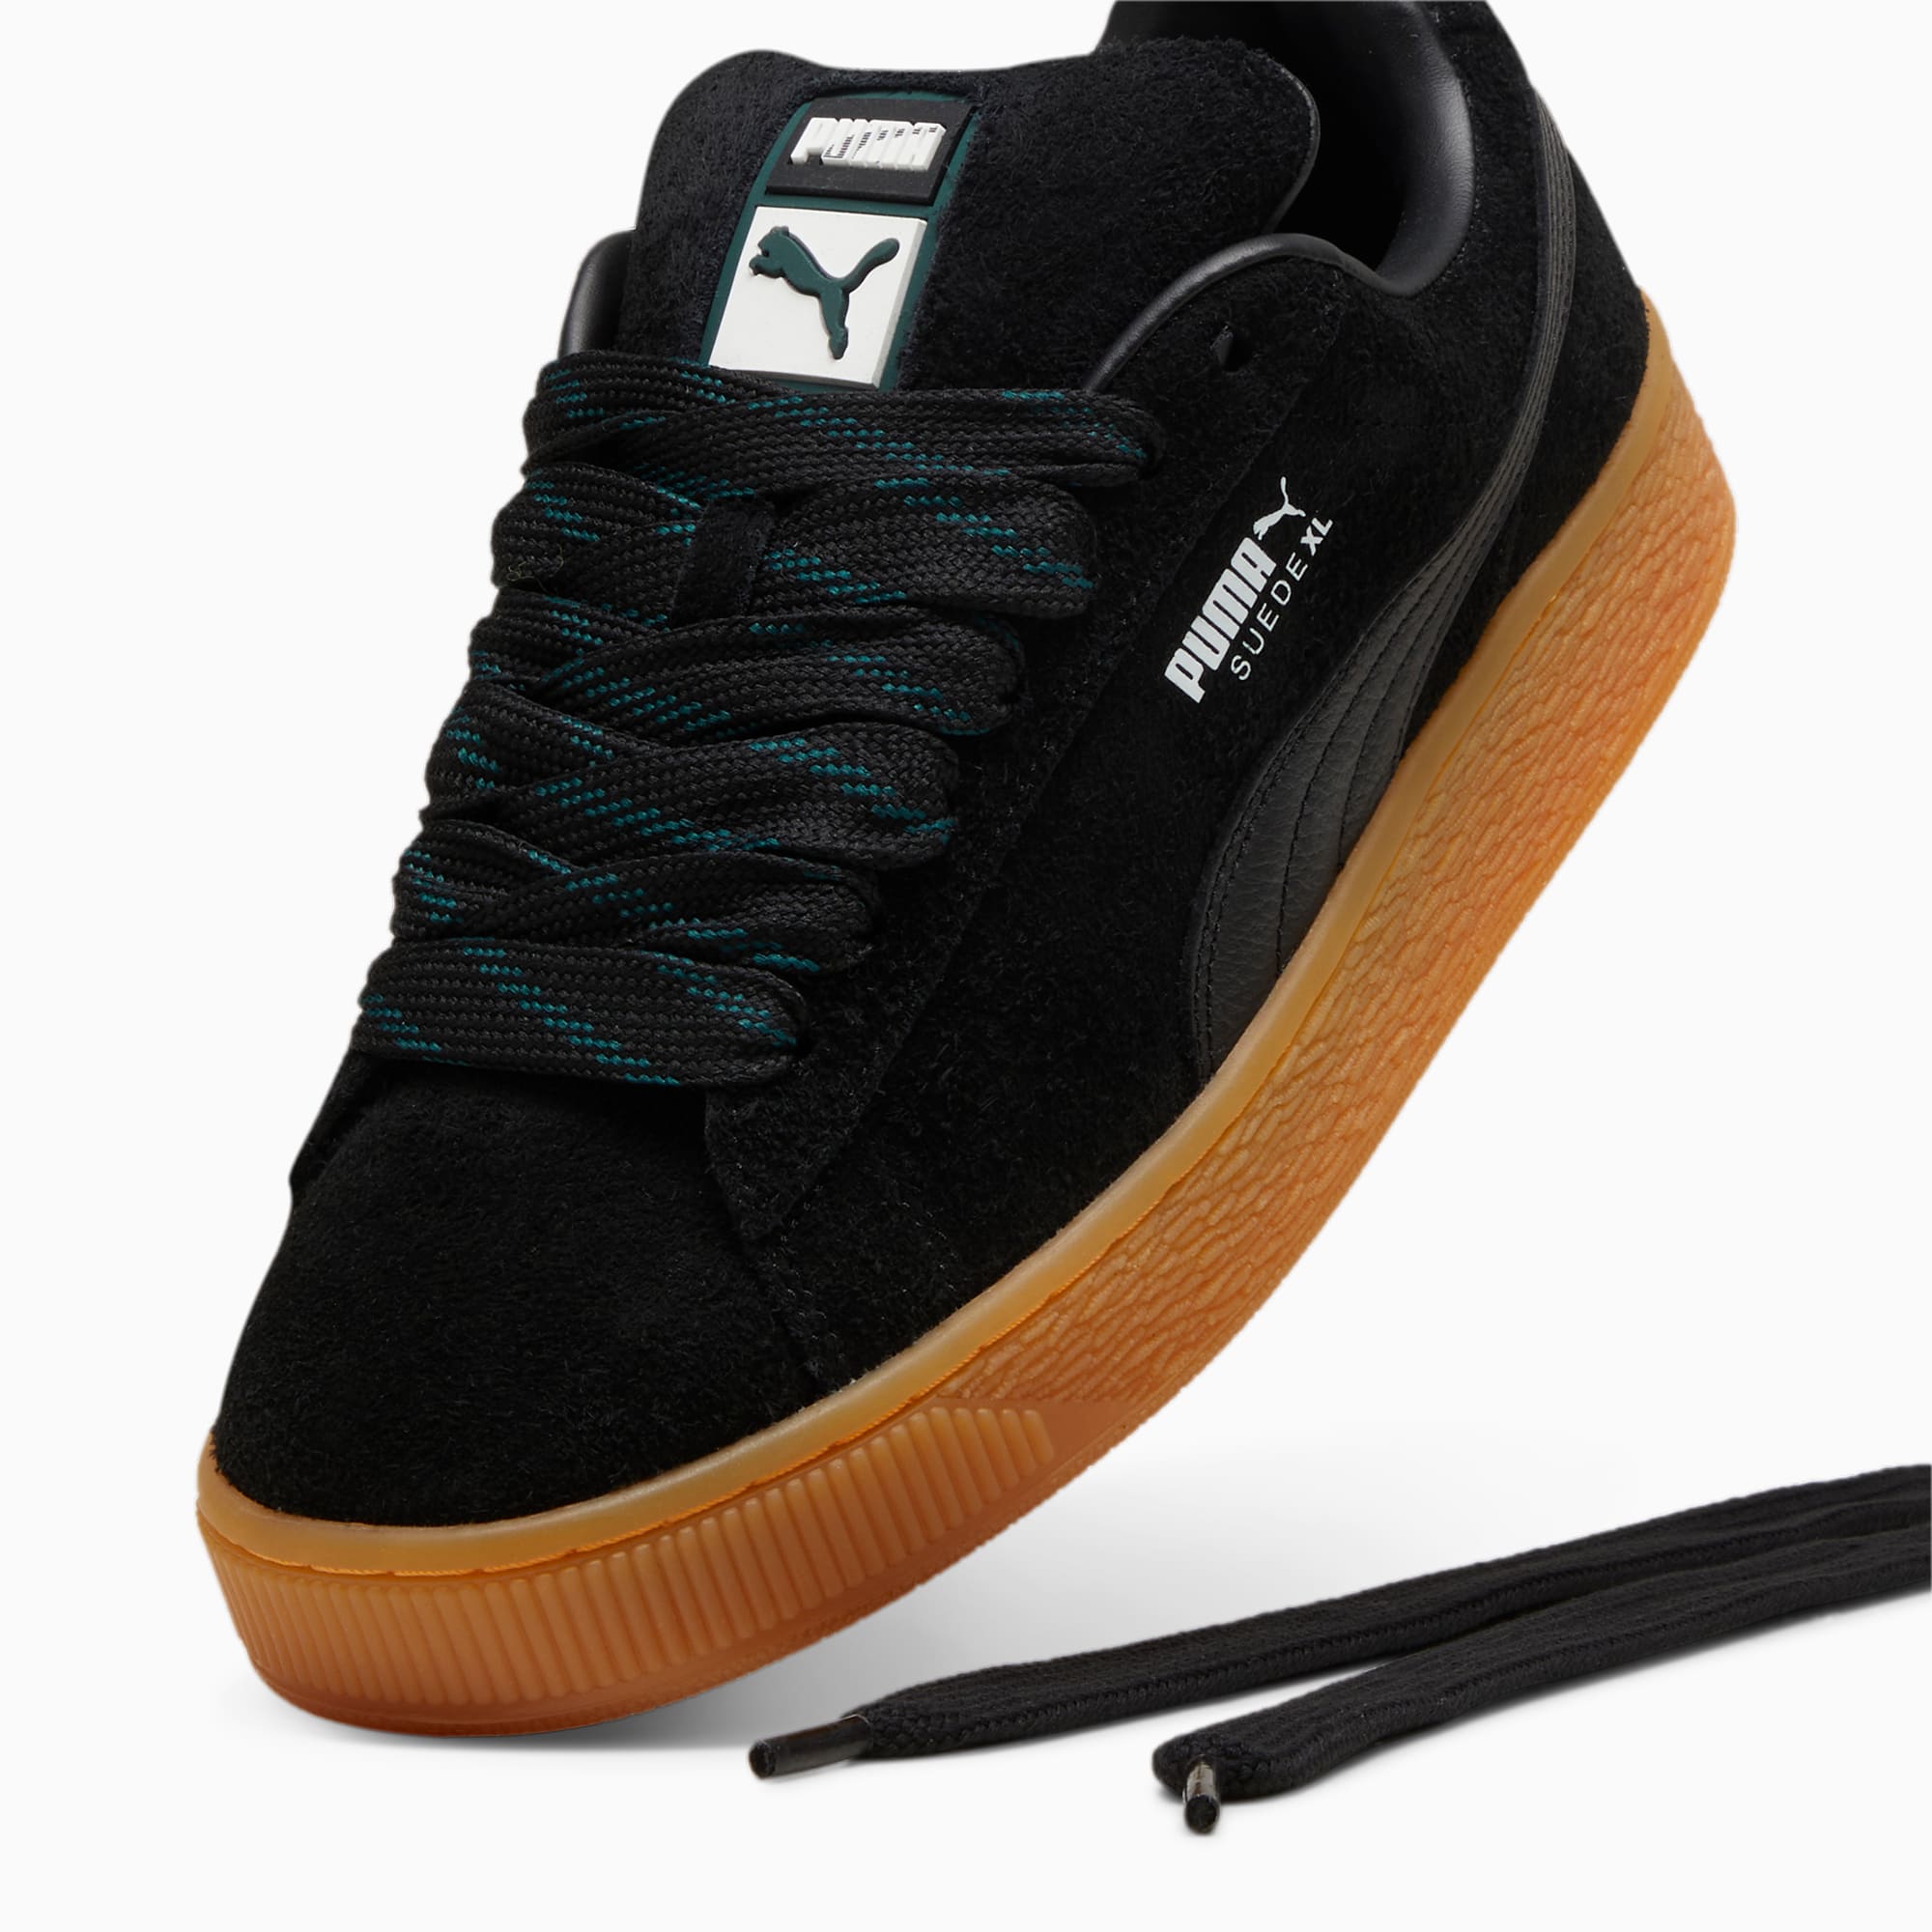 PUMA Suede XL Flecked Sneakers Unisex Schuhe, Schwarz/Grün, Größe: 38, Schuhe